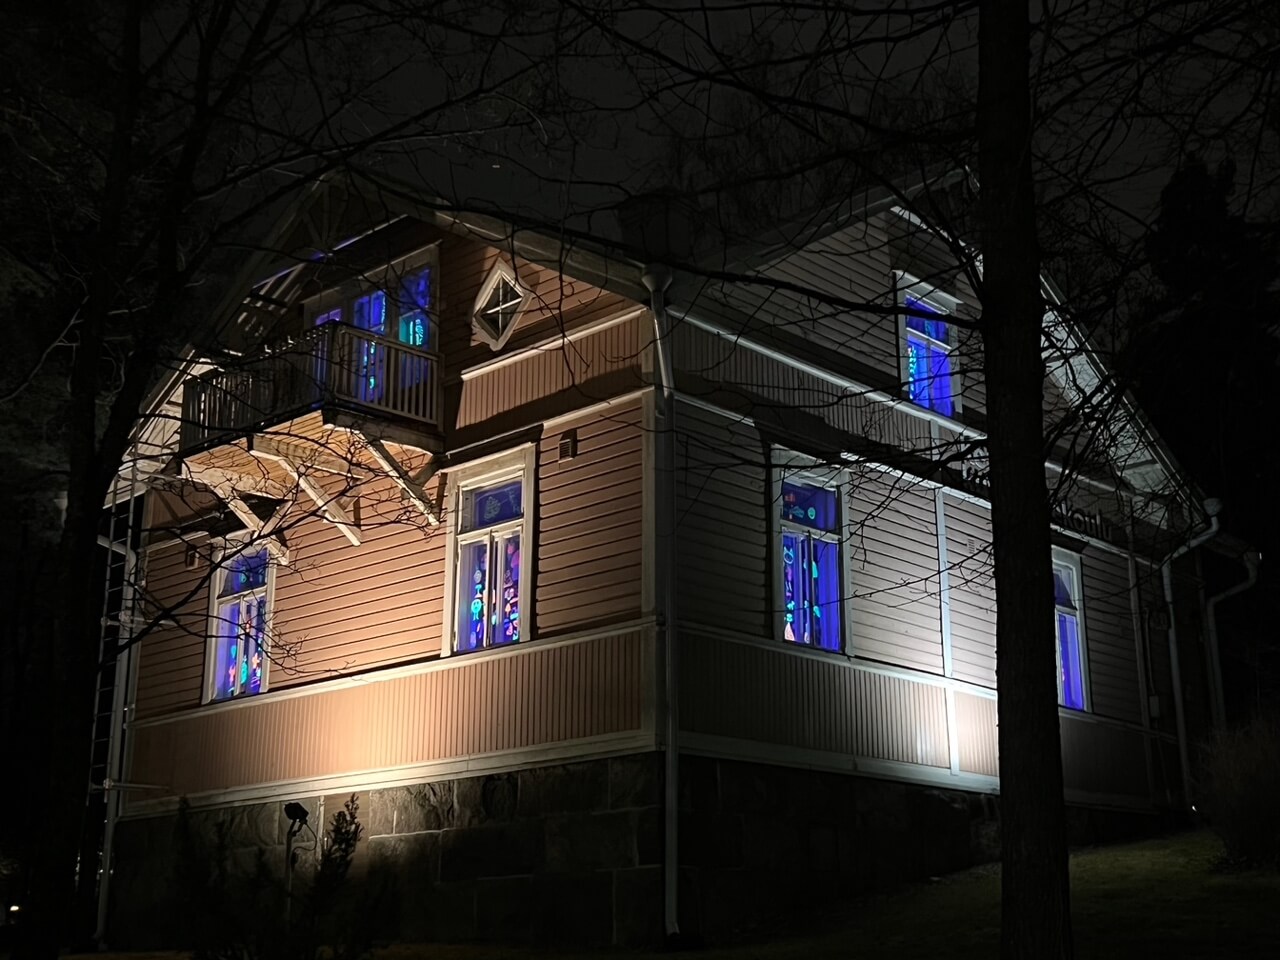 Ruskea puutalo, jonka ikkunoissa loistaa uv-valolla valaistuja värikkäitä piirustuksia.